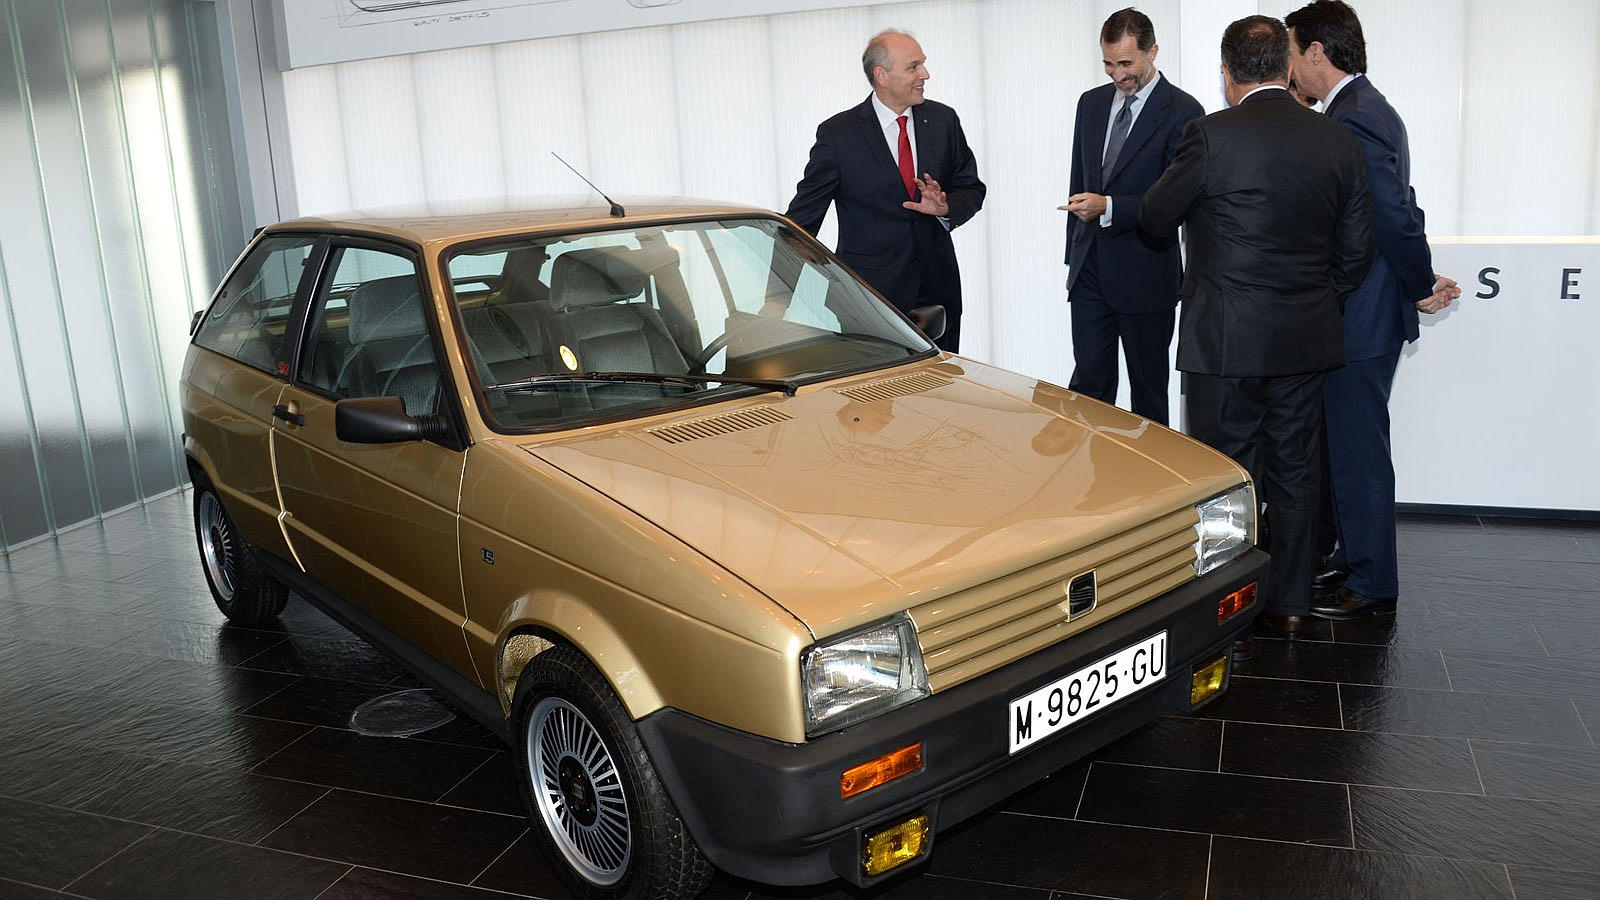 S.M. Felipe VI en una reciente visita a Seat, contemplando el que fuese su primer coche: un Ibiza que le regaló su padre, S.M. Juan Carlos I